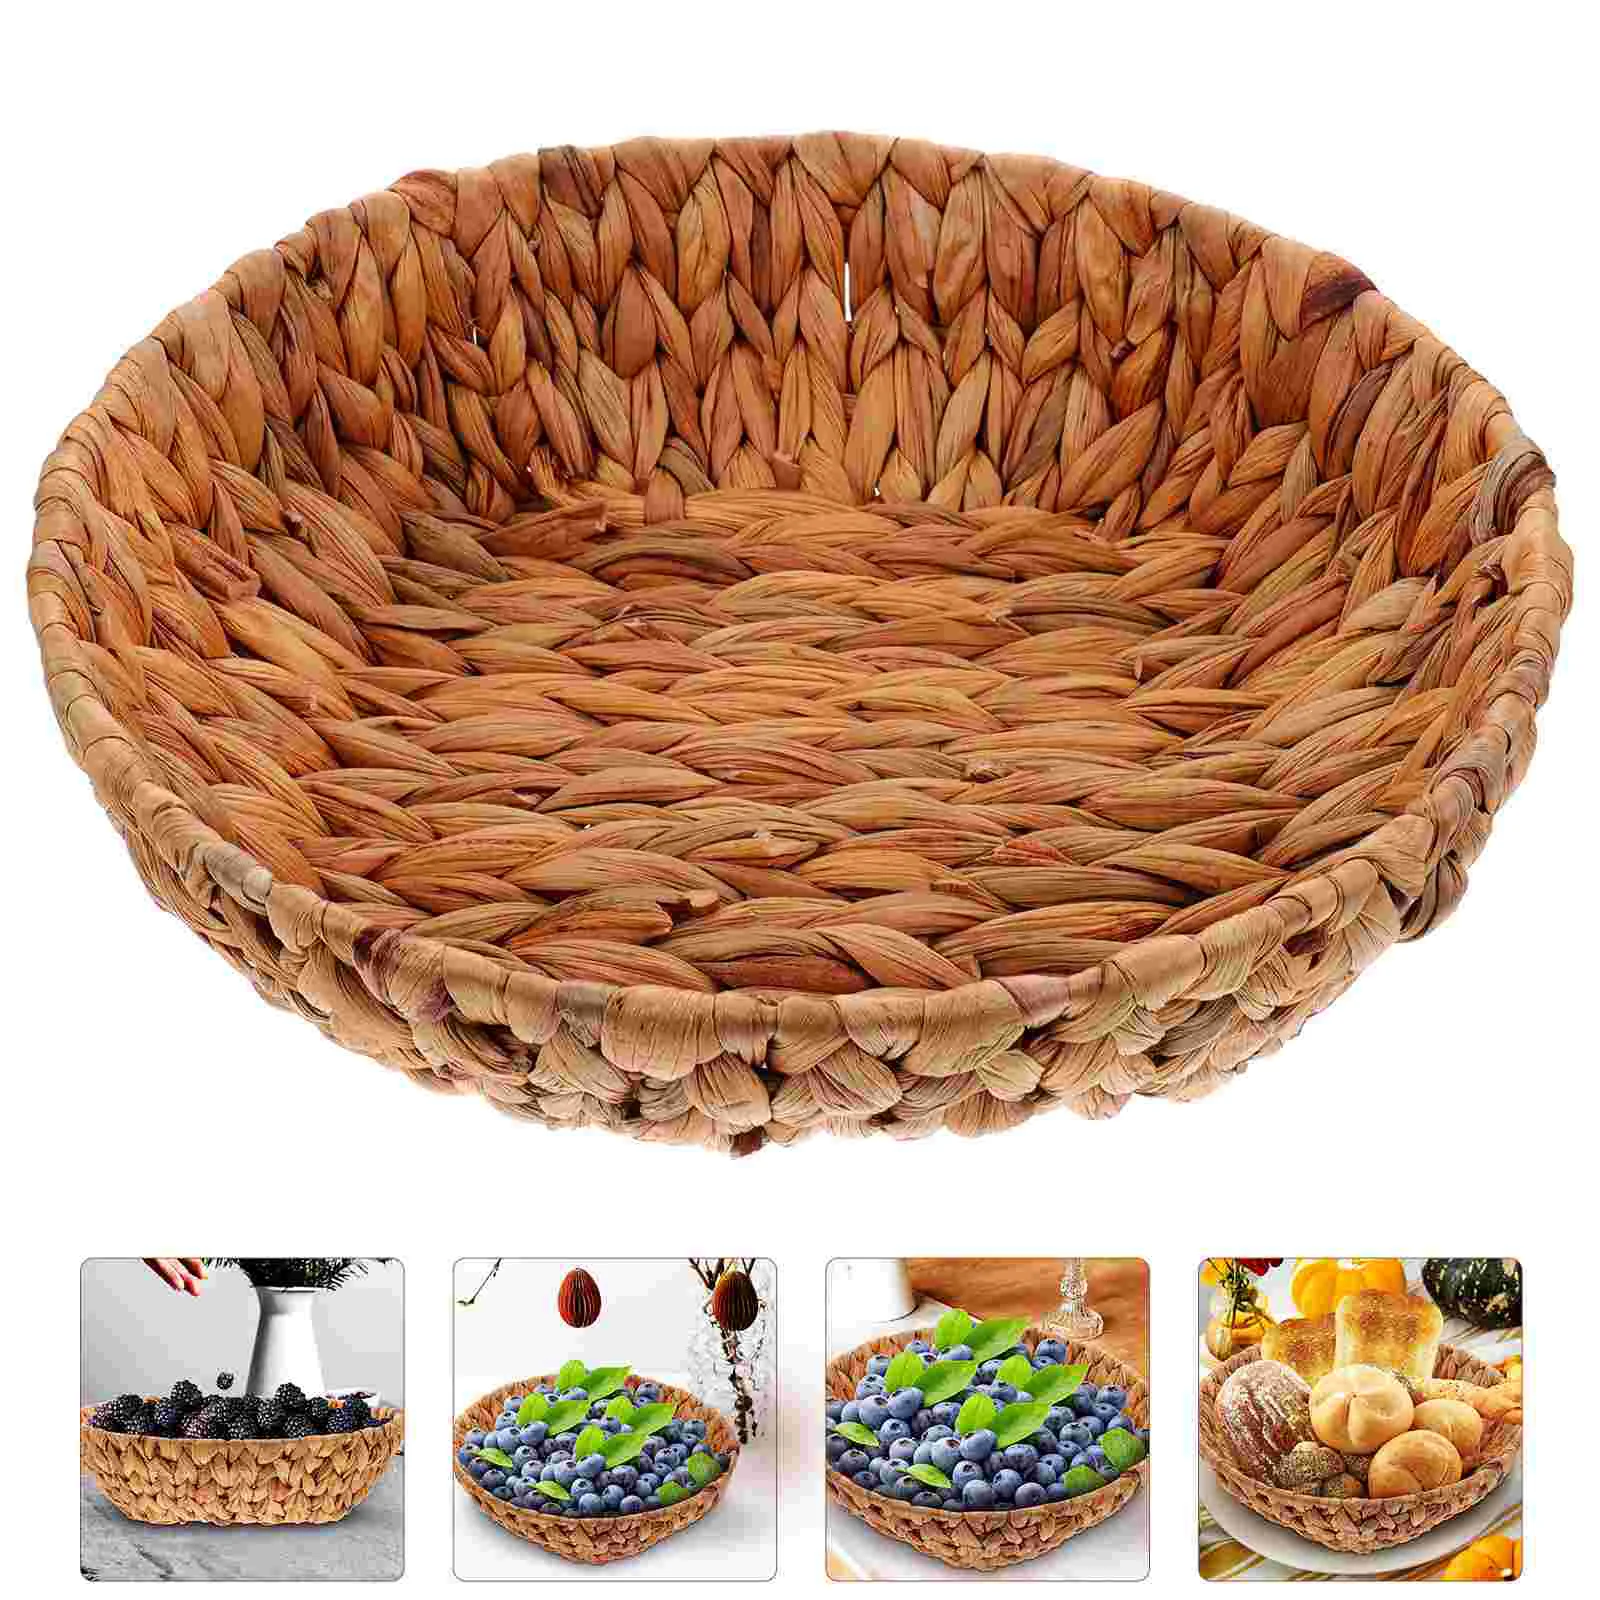 

Zero Round Woven Bread Basket Grass Storage Dried Nut Fruit Organizer Container Vegetables Serving Basket